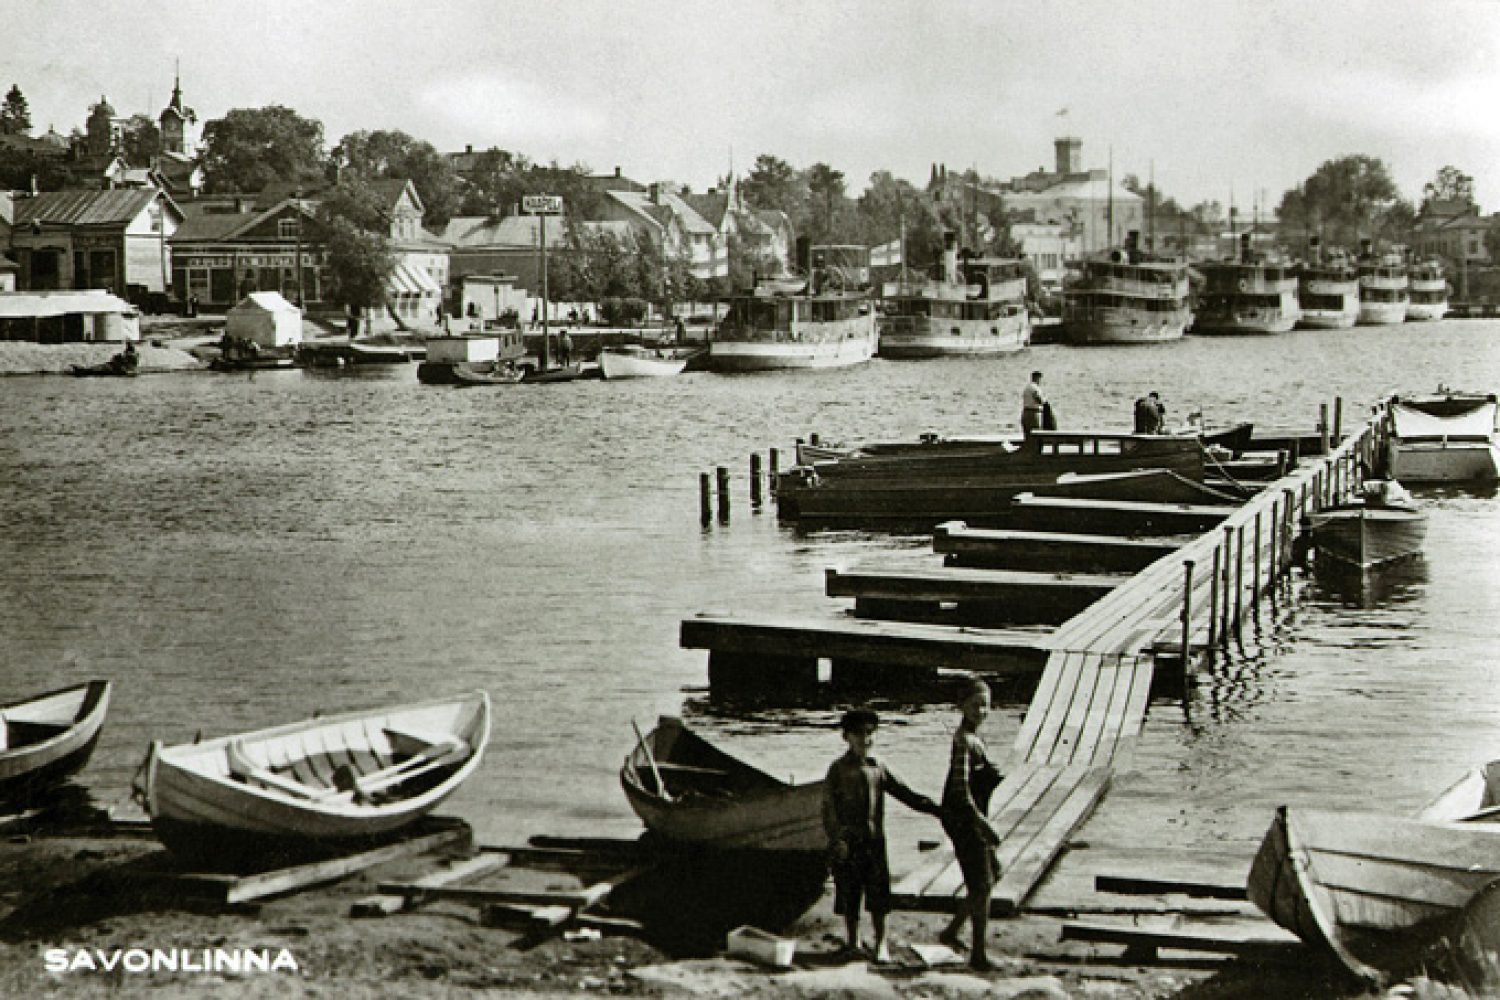 Mustavalkoisessa kuvassa näkyy kaupungin satamalaituri, jossa on seitsemän valkokylkistä höyrylaivaa ja pienempiä aluksia. Etualalla kuvassa on pienempi laituri, jossa on muutama soutuvene.